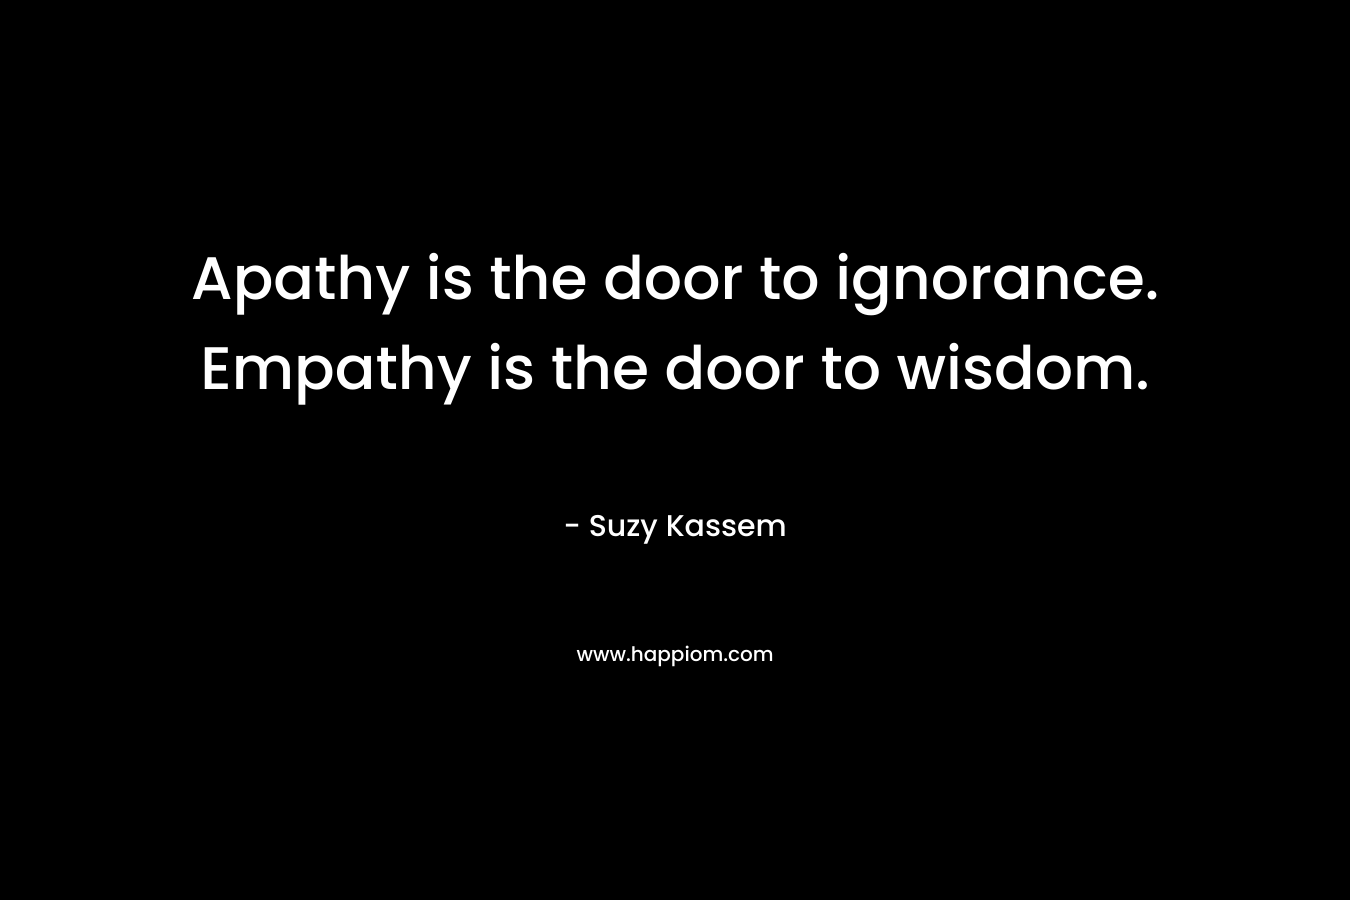 Apathy is the door to ignorance. Empathy is the door to wisdom.